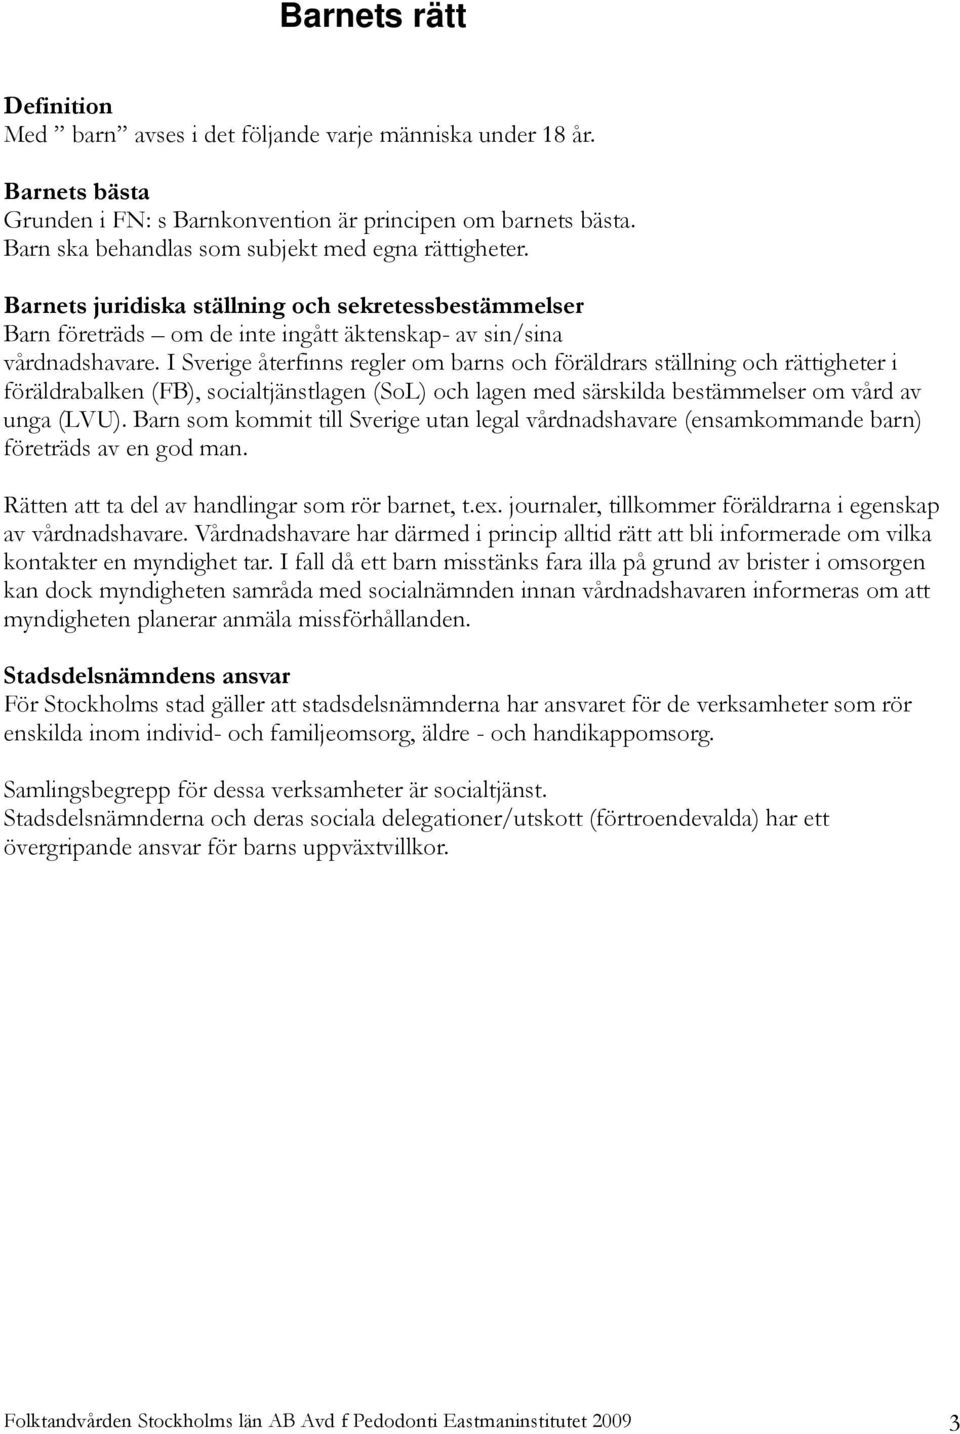 I Sverige återfinns regler om barns och föräldrars ställning och rättigheter i föräldrabalken (FB), socialtjänstlagen (SoL) och lagen med särskilda bestämmelser om vård av unga (LVU).